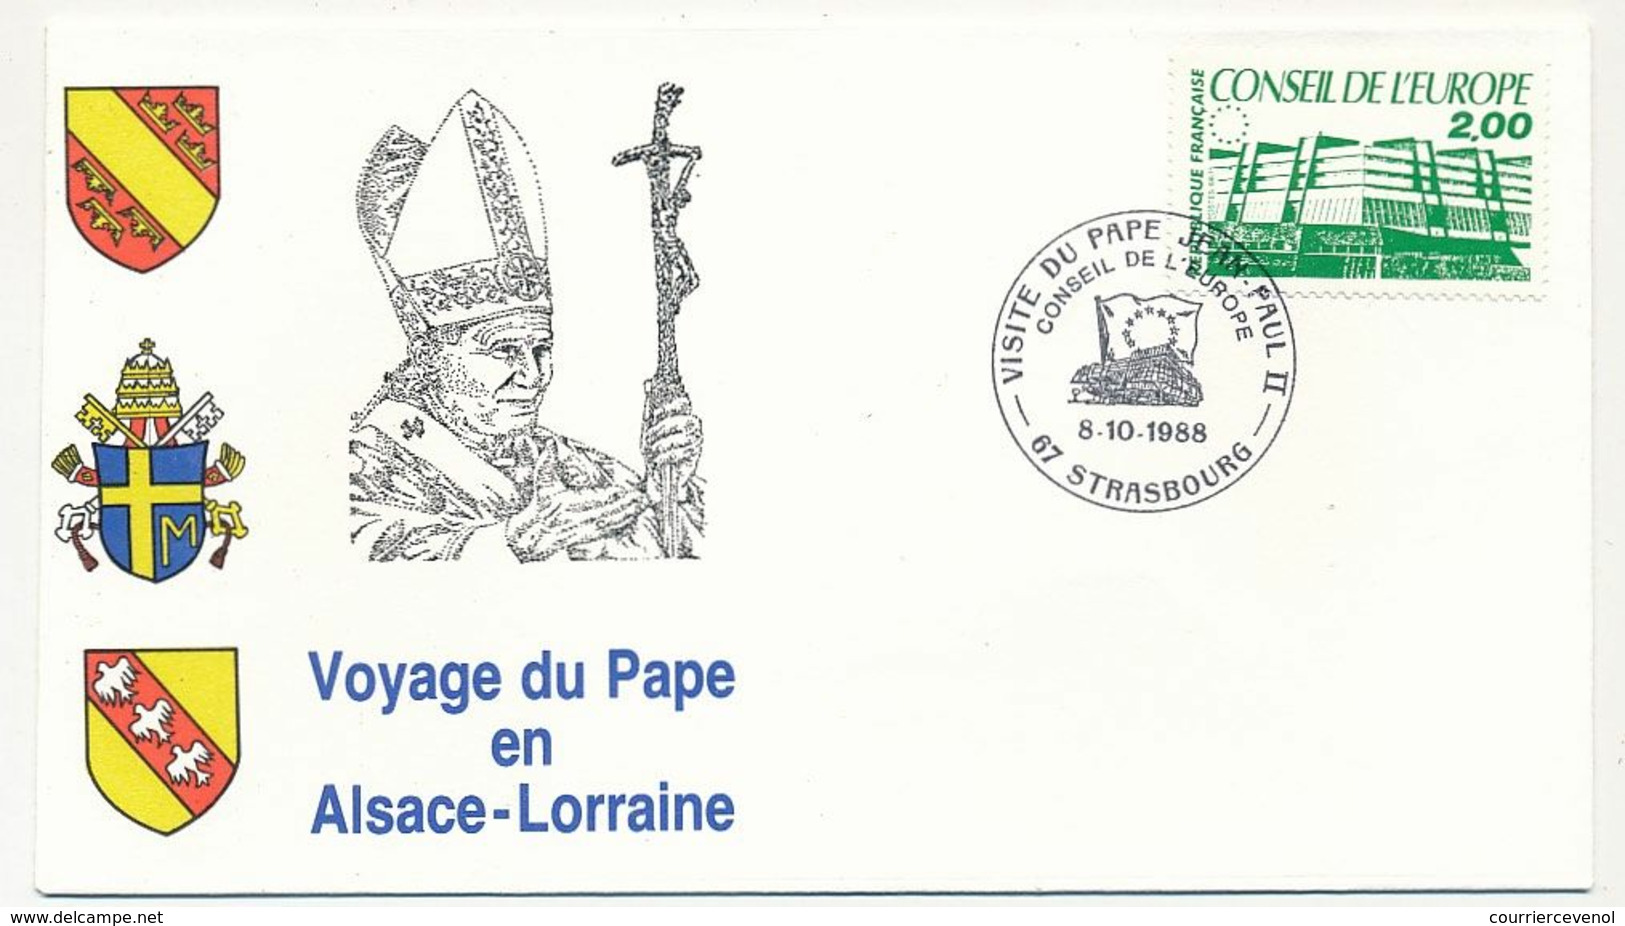 FRANCE - 7 Enveloppes Voyage Du Pape En Alsace Lorraine 1988 + VATICAN - 1 Env Idem - Christentum